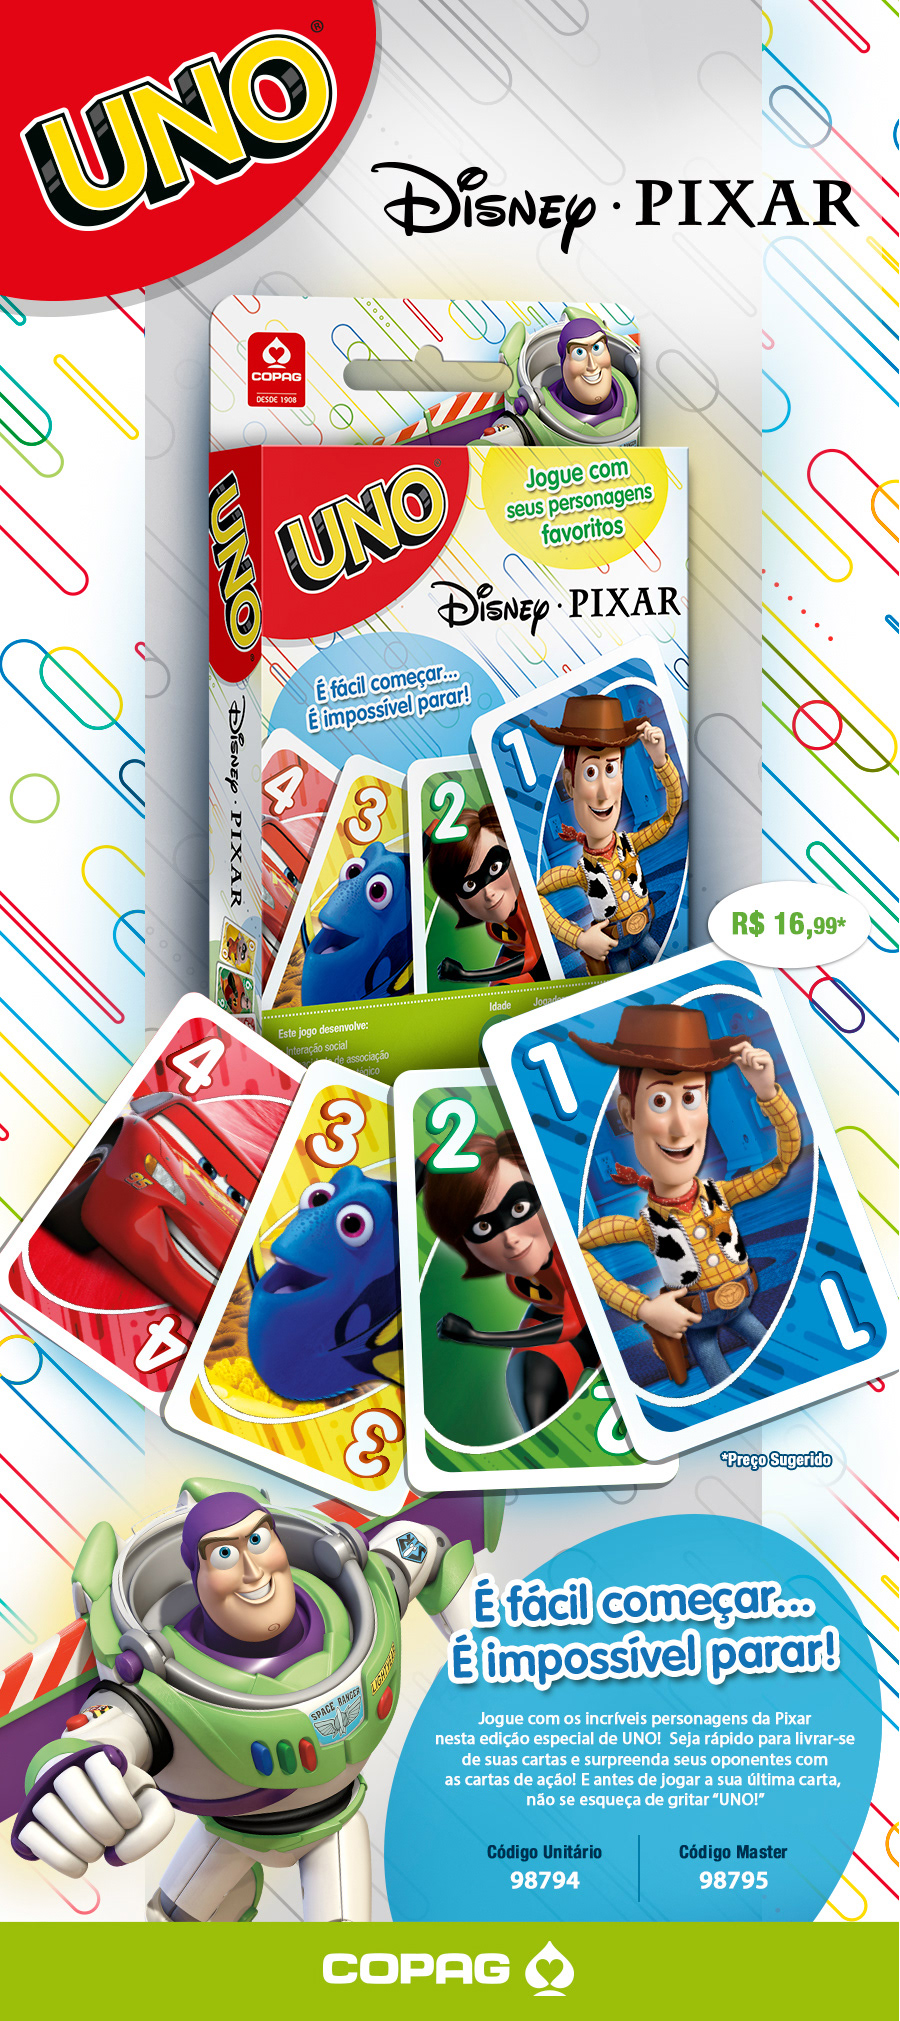 Disney Pixar Collection UNO